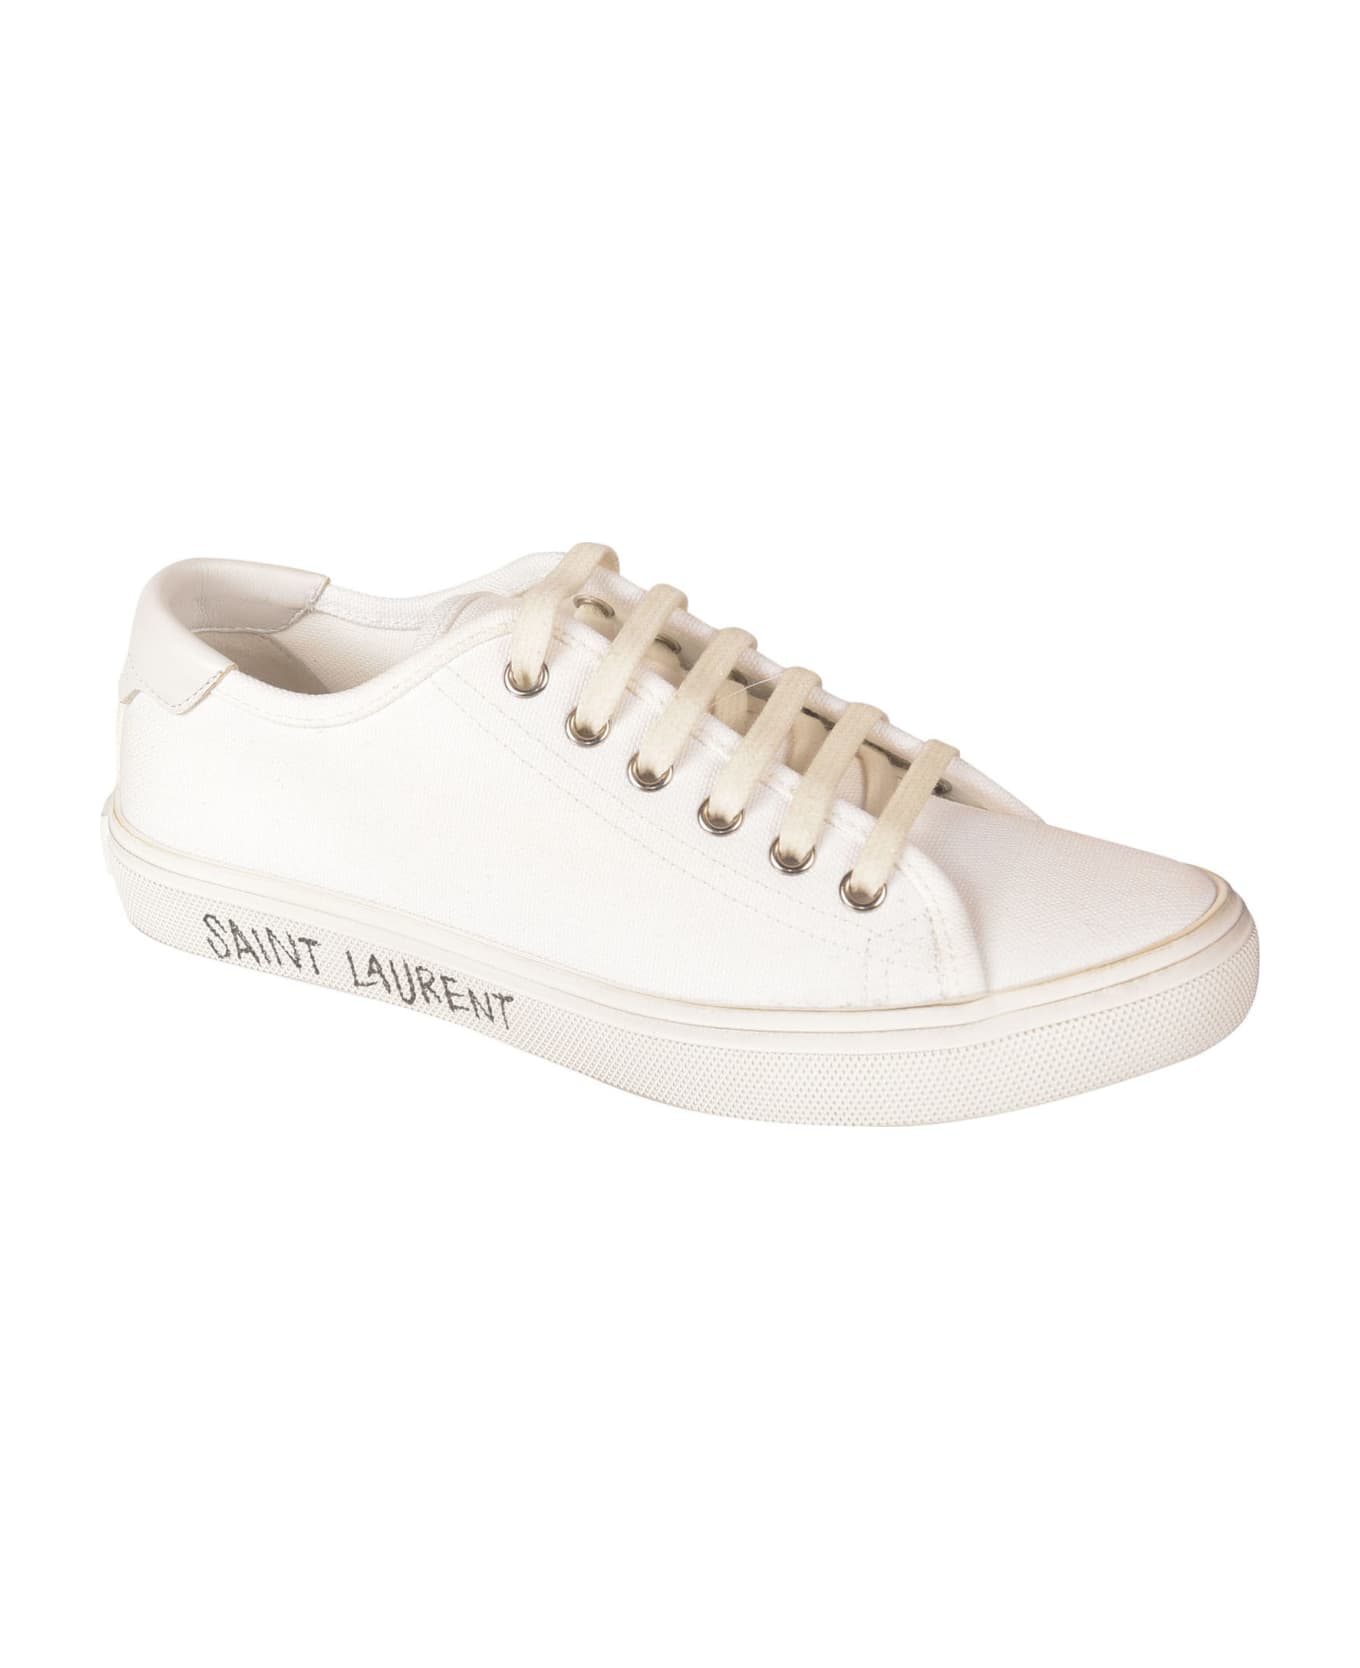 Saint Laurent Side Logo Sneakers - White